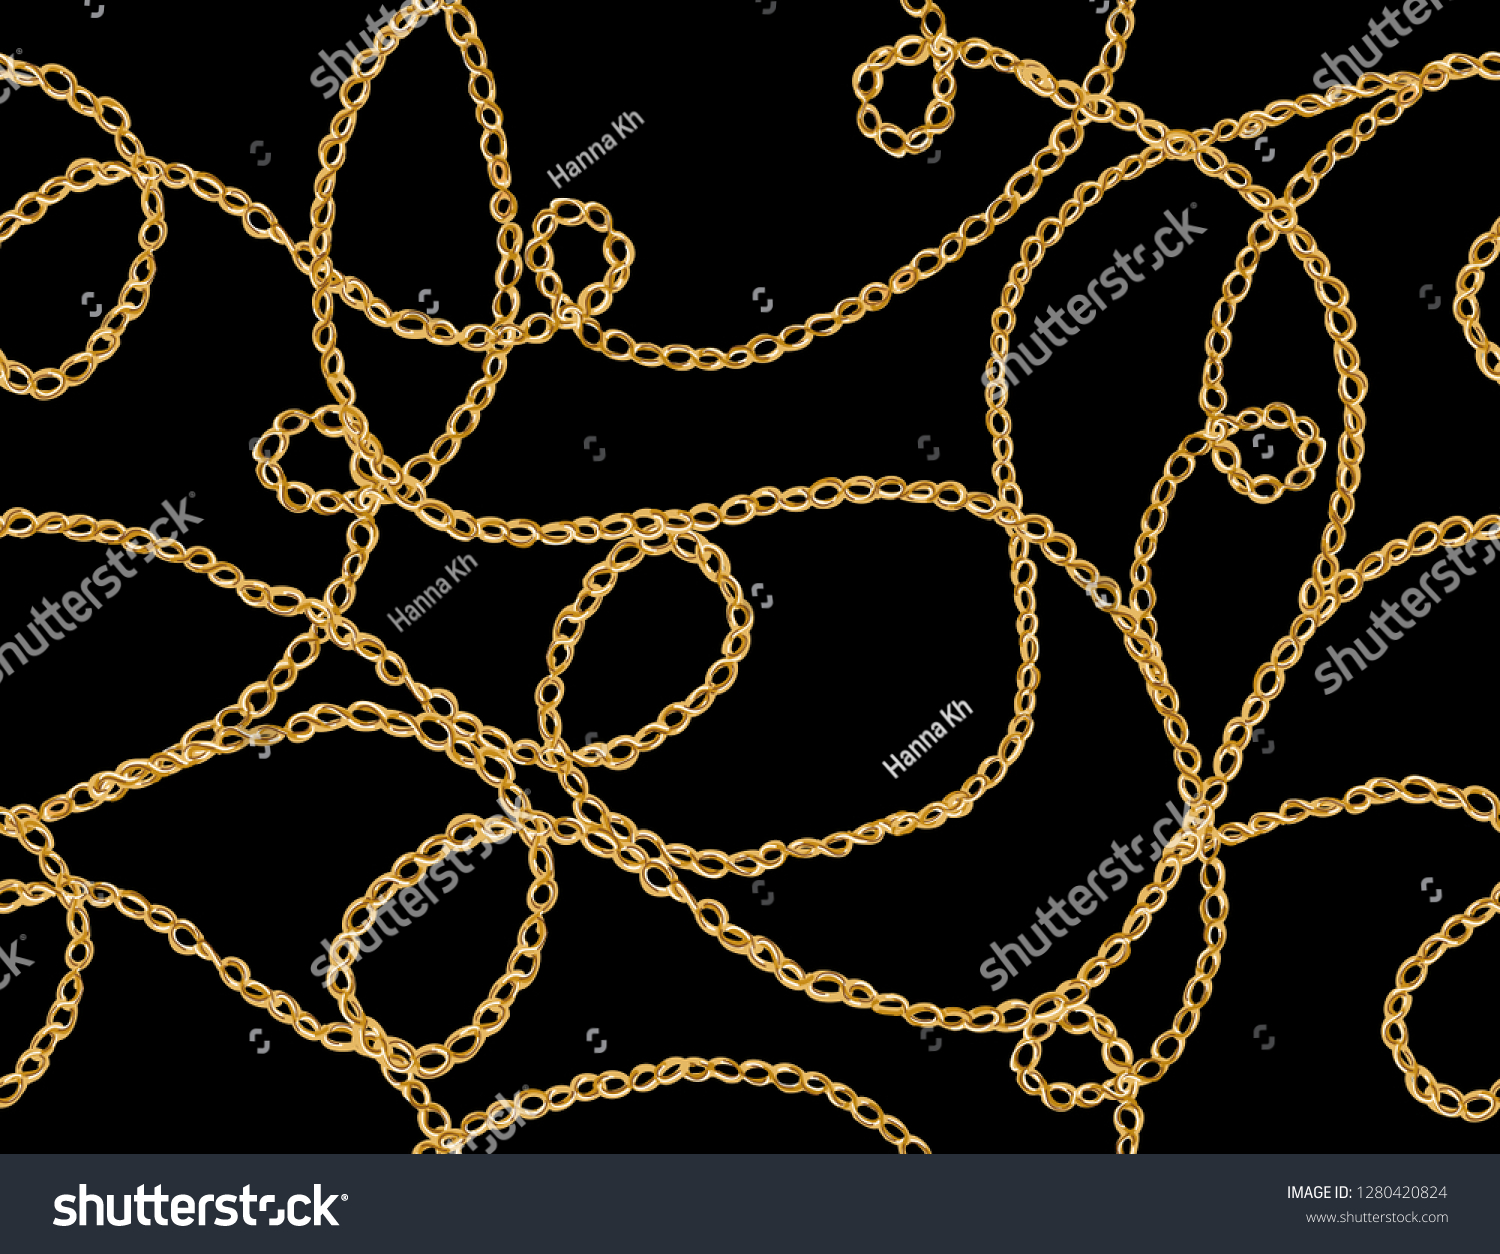 手描きのチェーンの付いたシームレスなベクター画像花柄の背景 壁紙 ウェブページの背景 表面のテクスチャー 繊維に最適 黒い背景に分離型 のベクター画像素材 ロイヤリティフリー